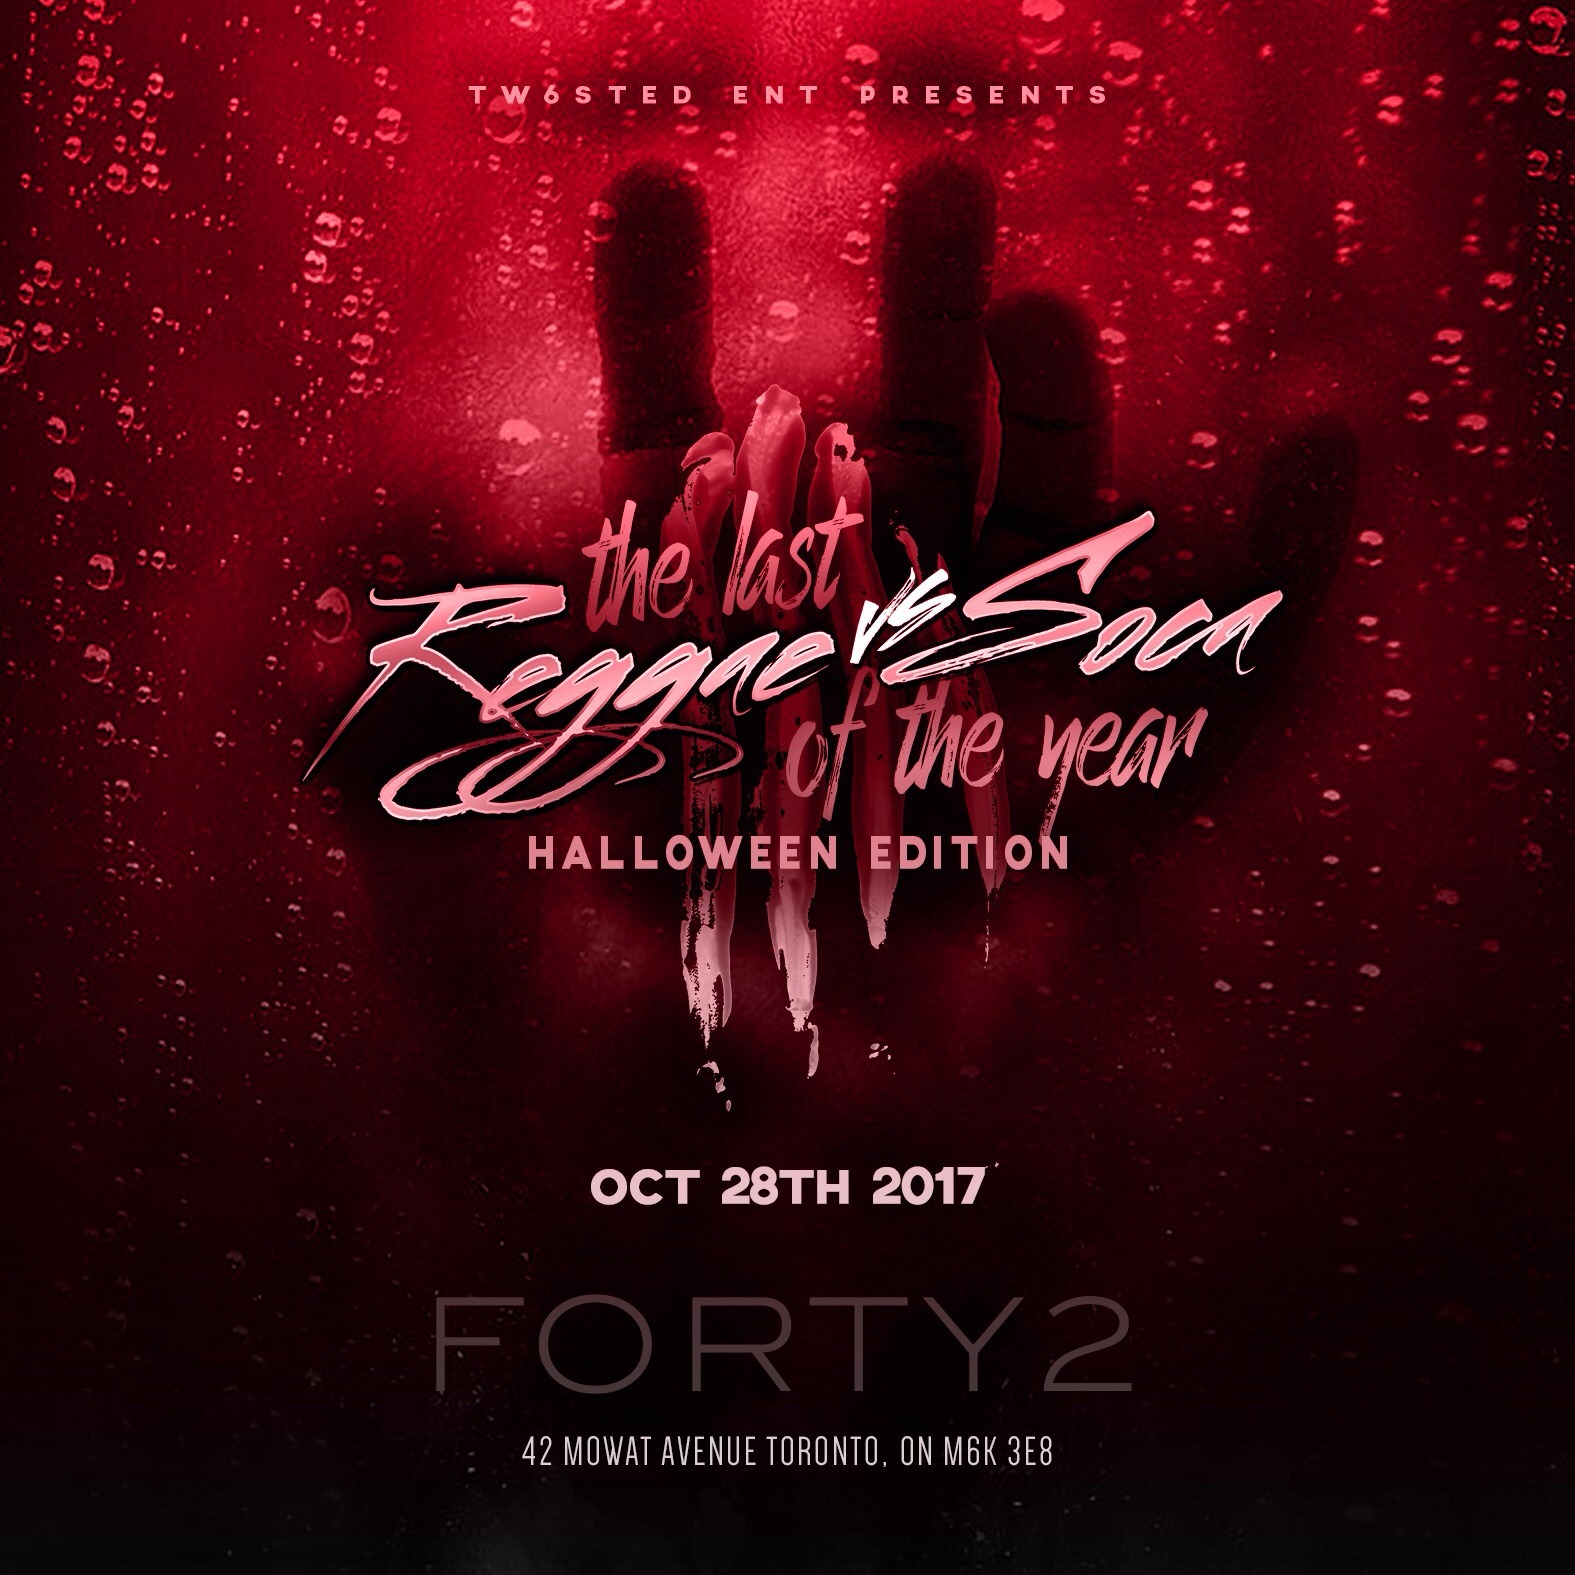 Reggae Vs Soca: Halloween Edition | October 28, 2017